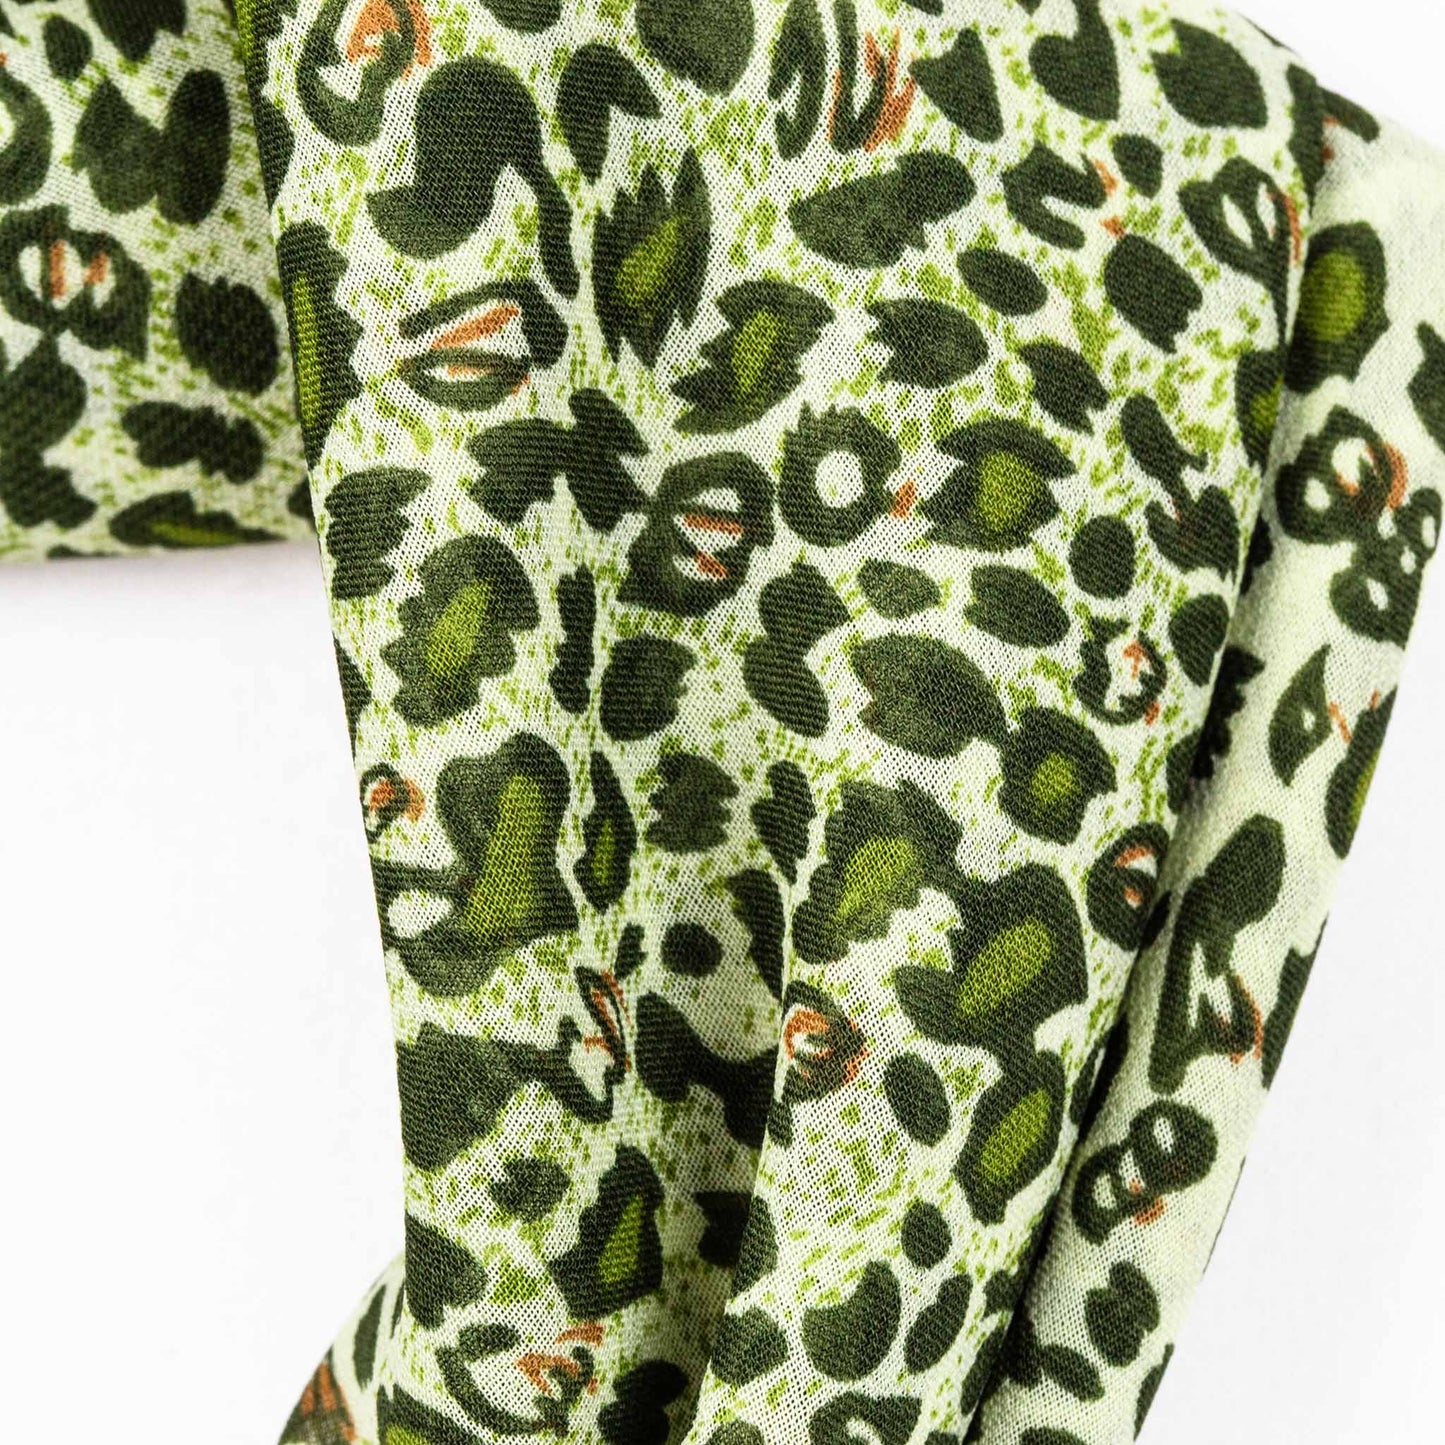 Eșarfă damă din mătase cu animal print , forme mici, 70 x 65 cm - Verde